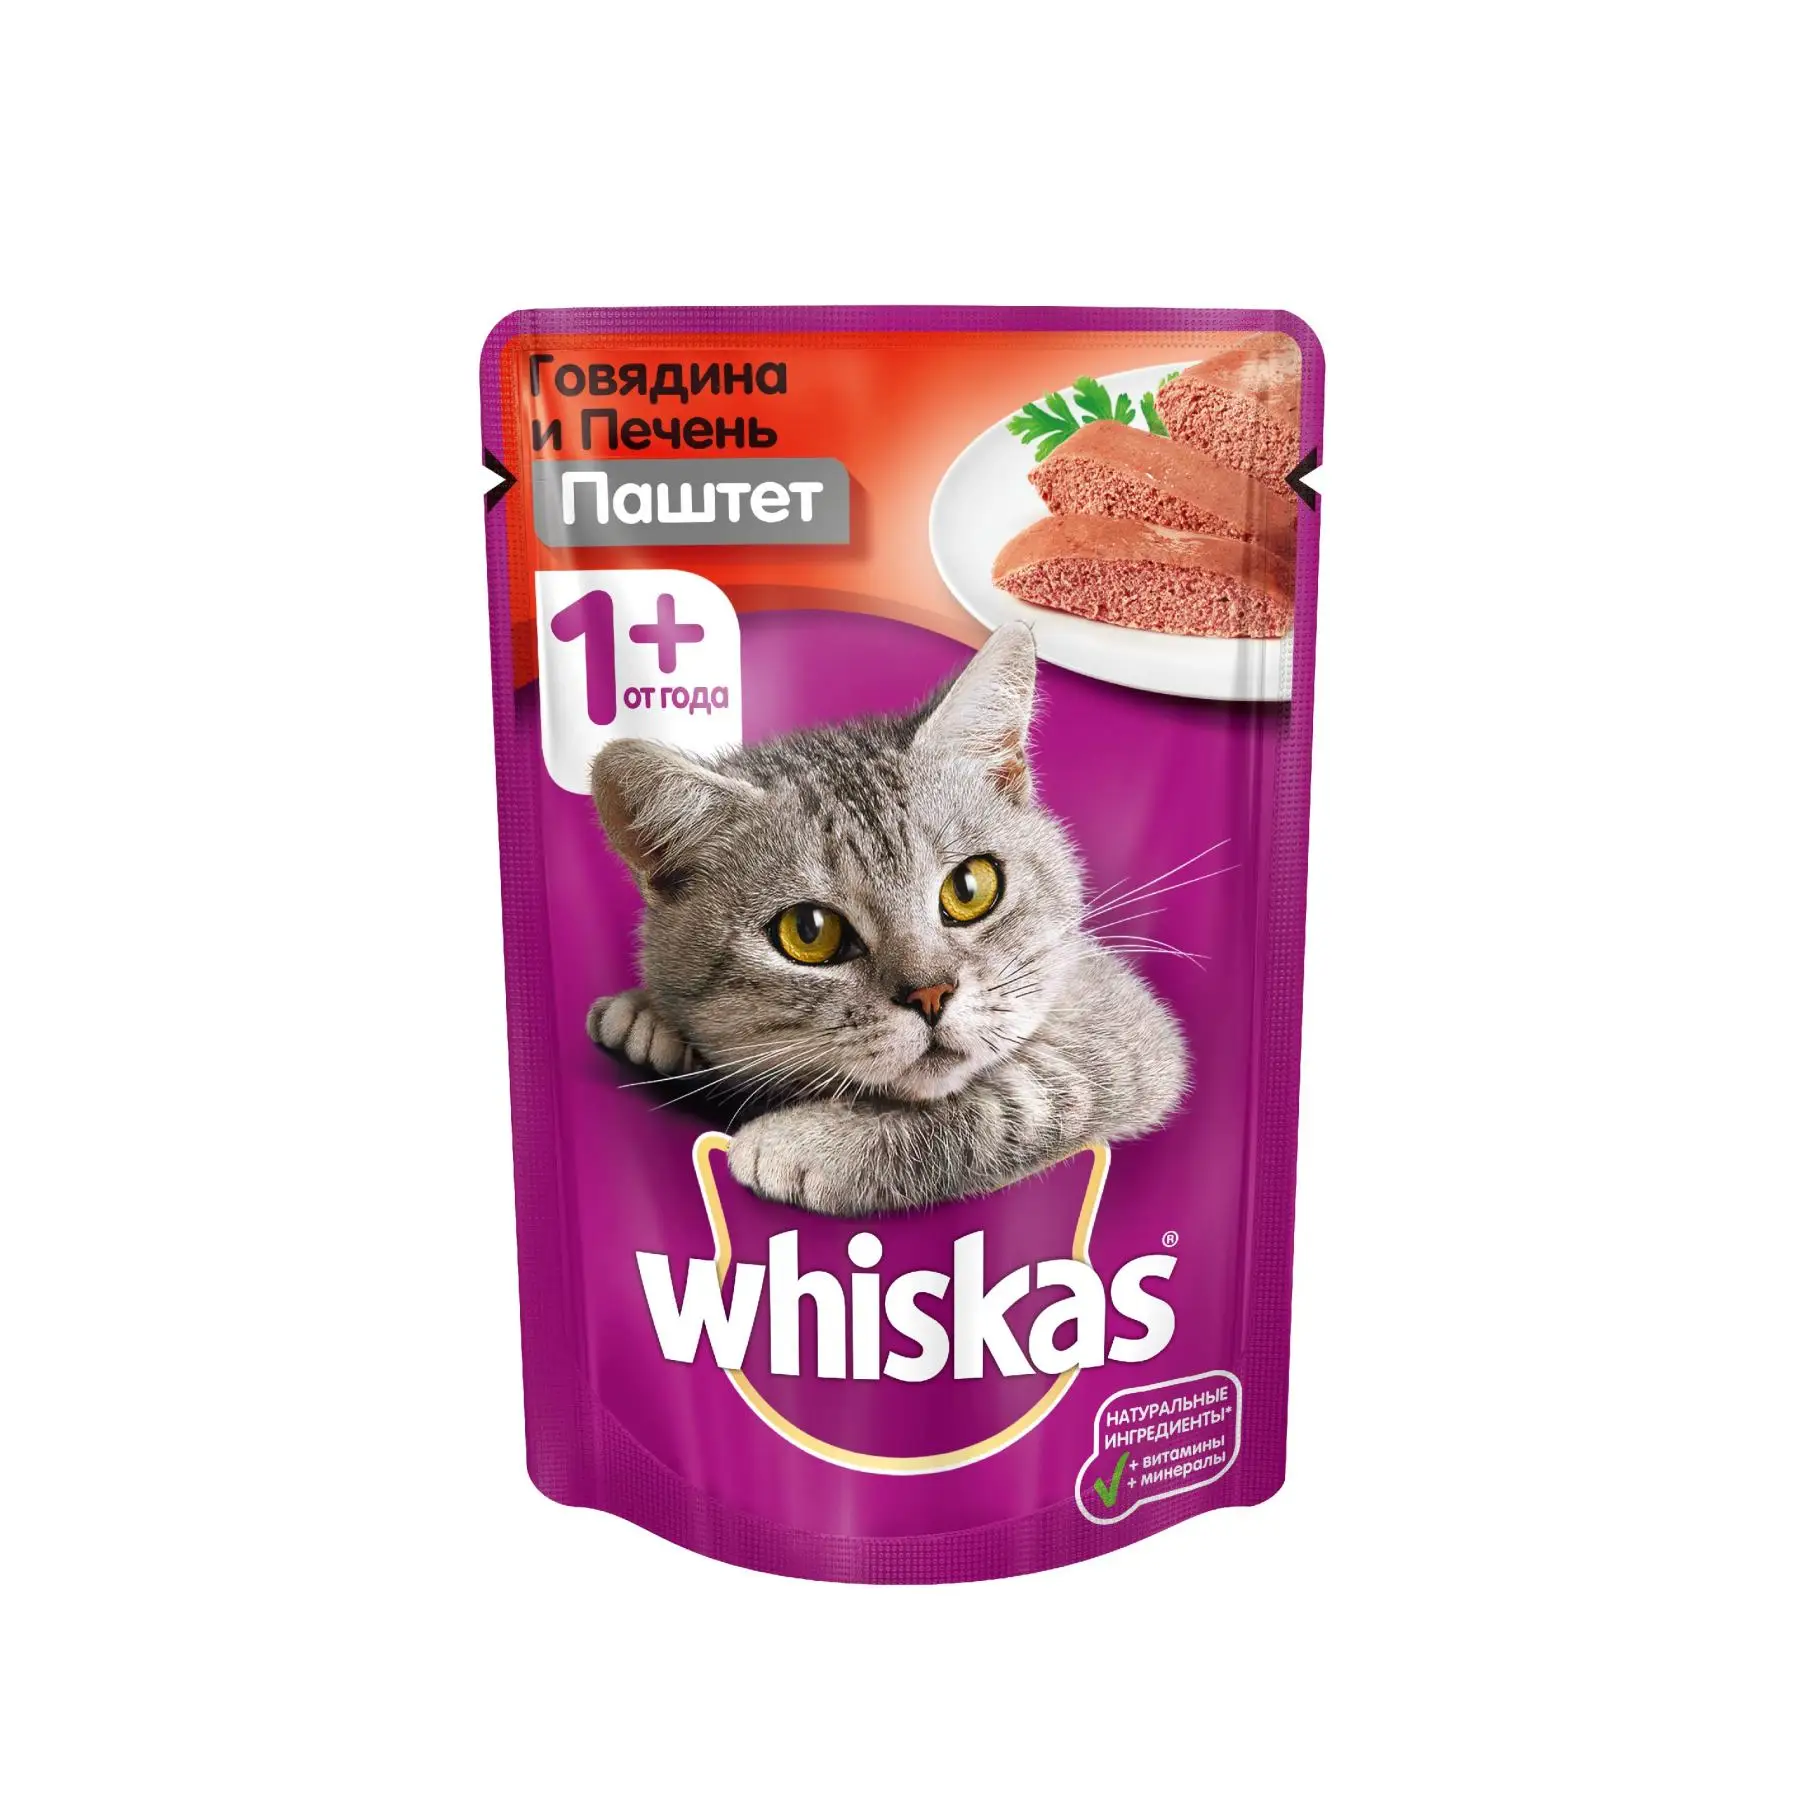 Влажный корм для кошек Whiskas паштет из говядины с печенью, 28 шт по 85г